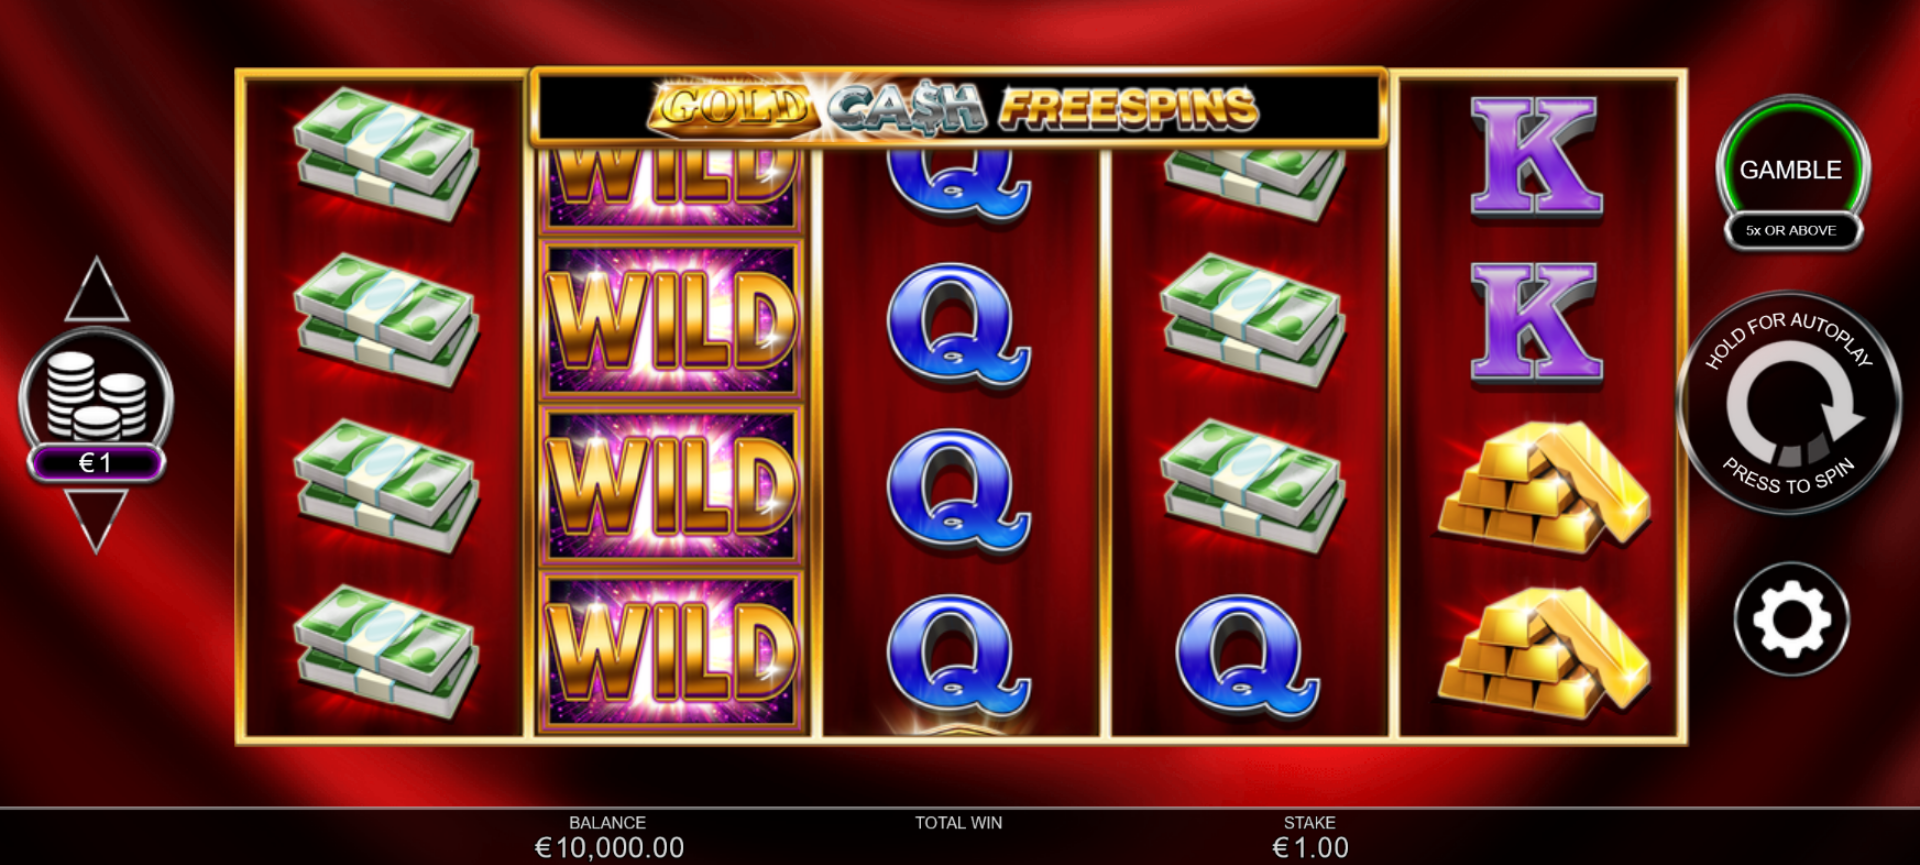 interfaccia del gioco slot online gold cash freespins